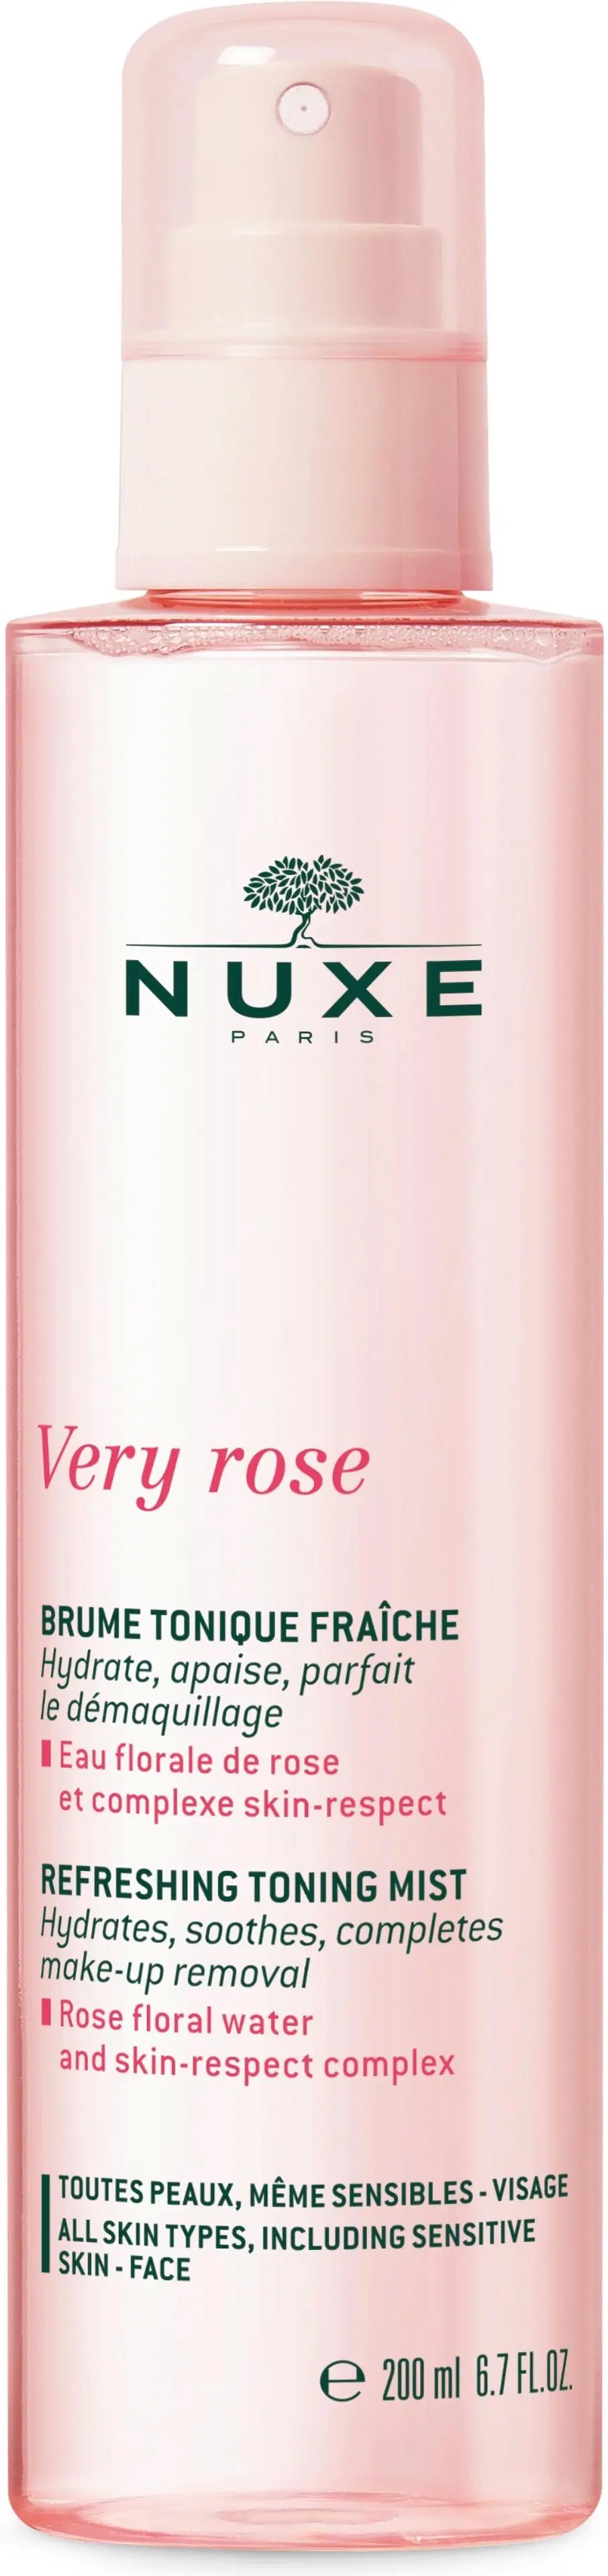 NUXE Very Rose Fresh Toning Mist kasvosuihke 200 ml